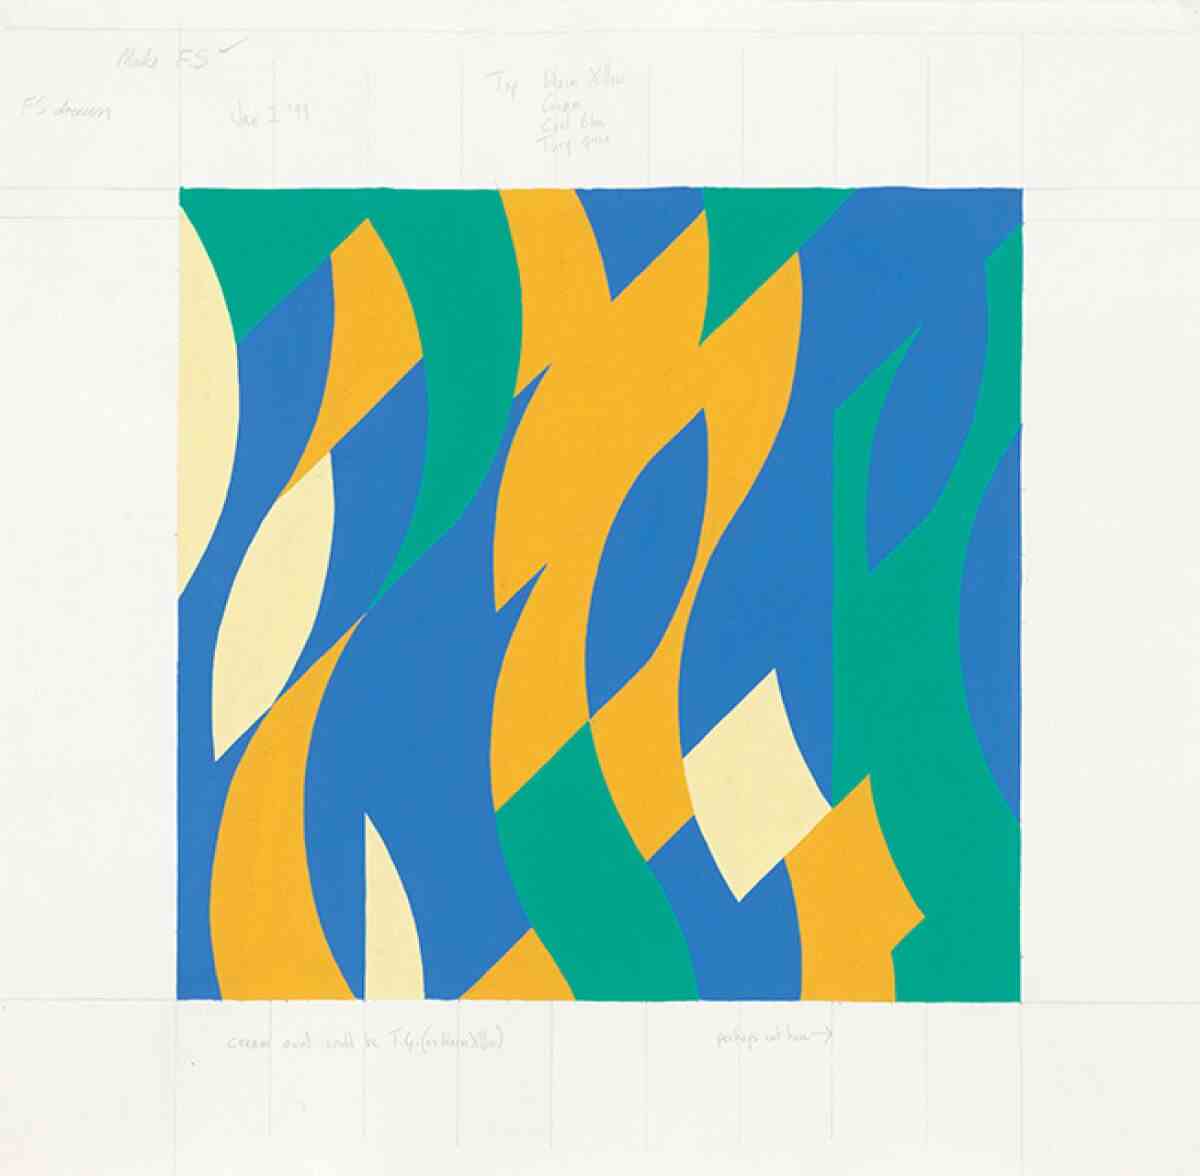 Ein Kunstwerk zeigt geometrische Formen in Blau, Blaugrün, Gelb und Weiß